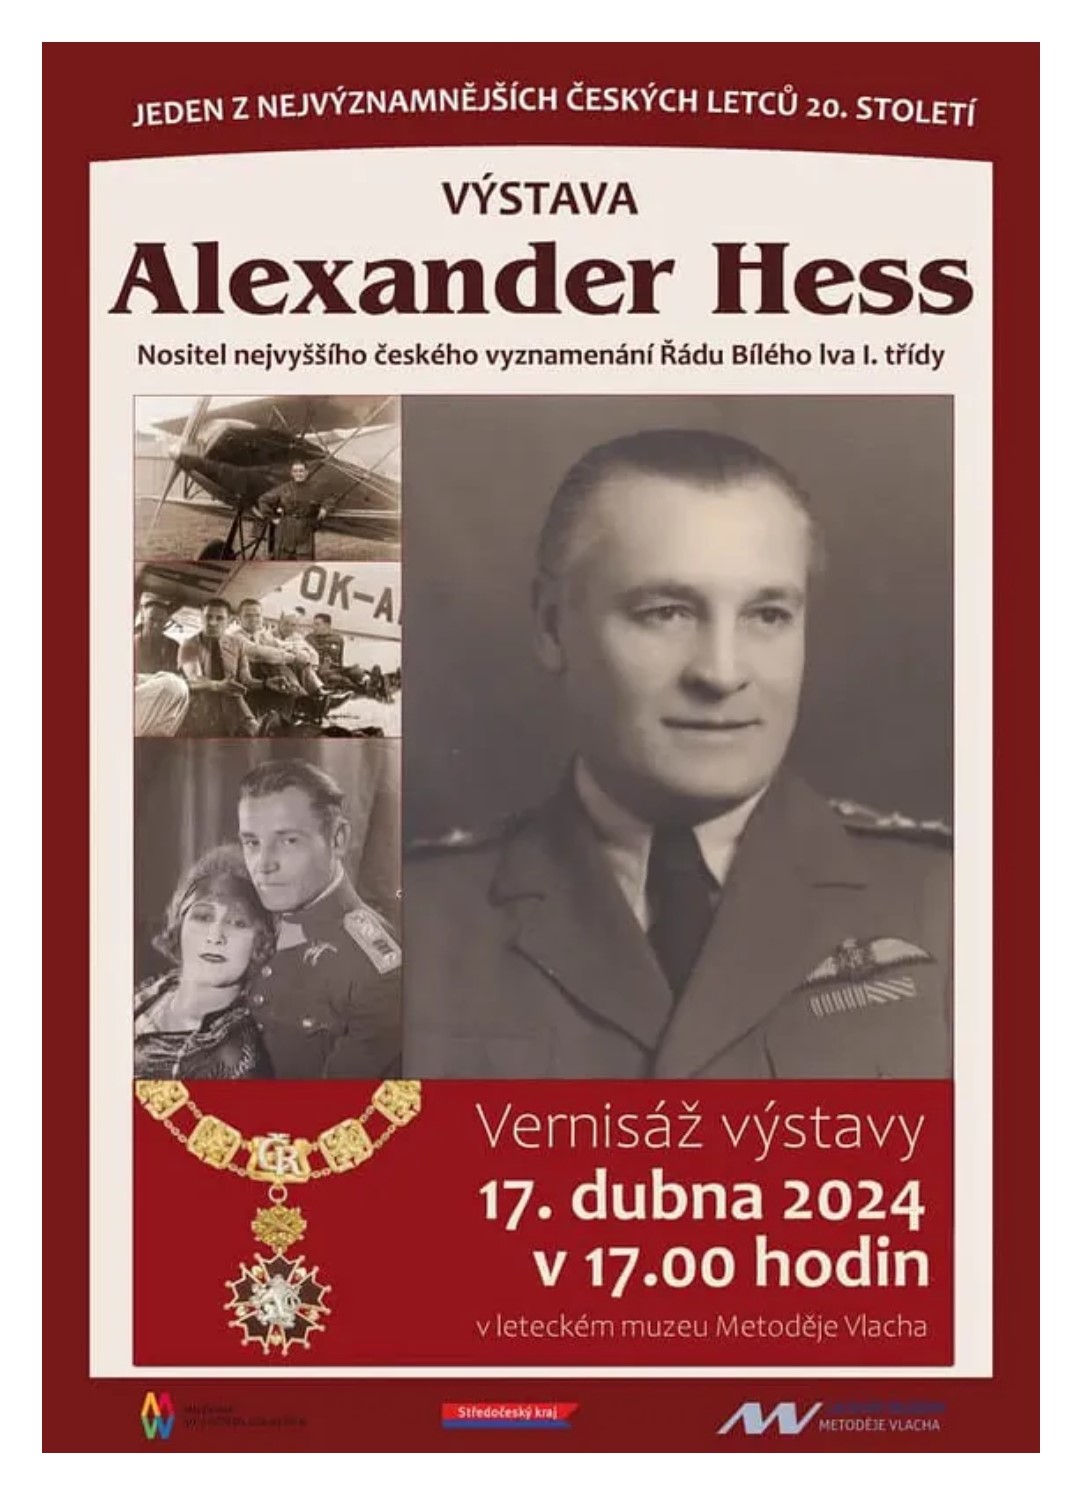 Hess Alexander Vystava Mlada Boleslav 17.4.2024